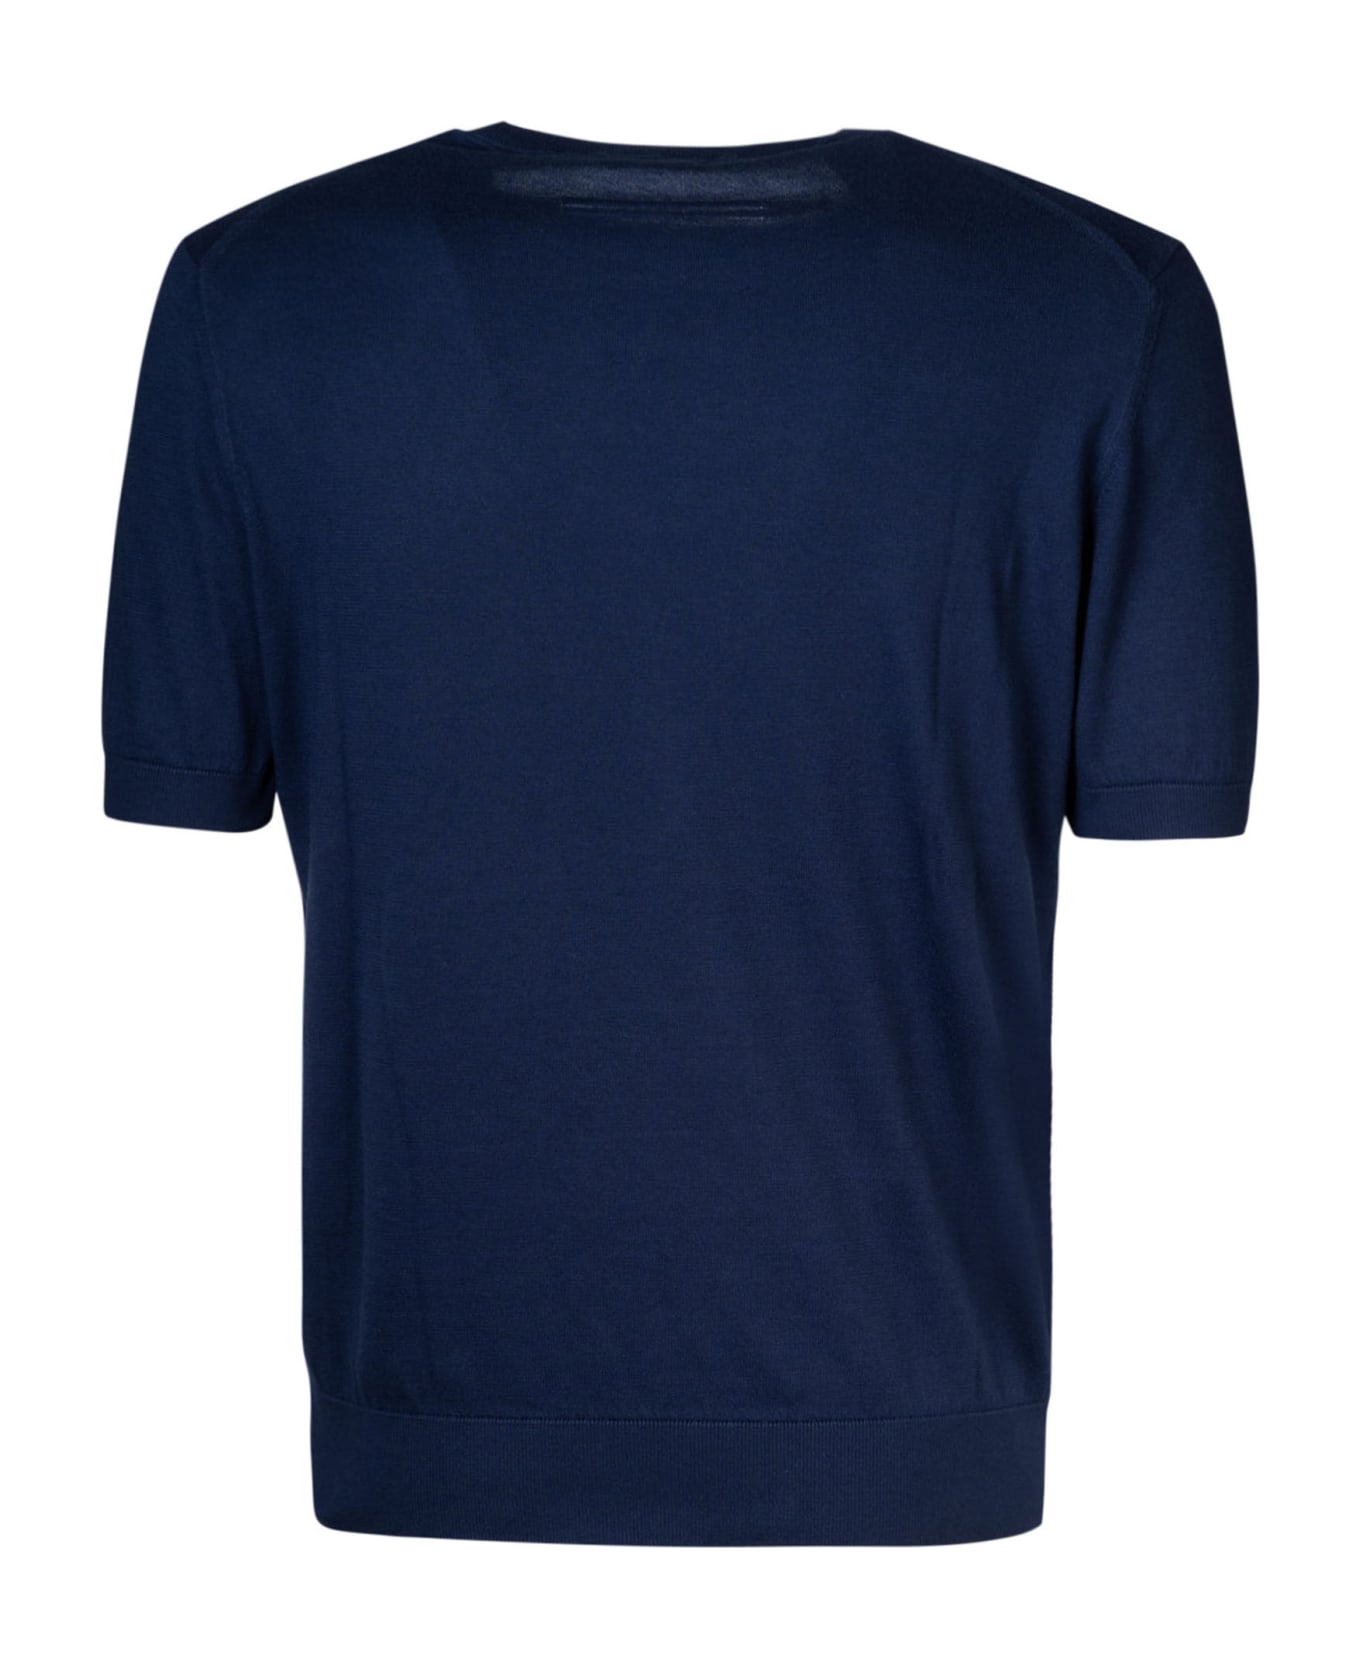 Zegna Round Neck T-shirt - C シャツ